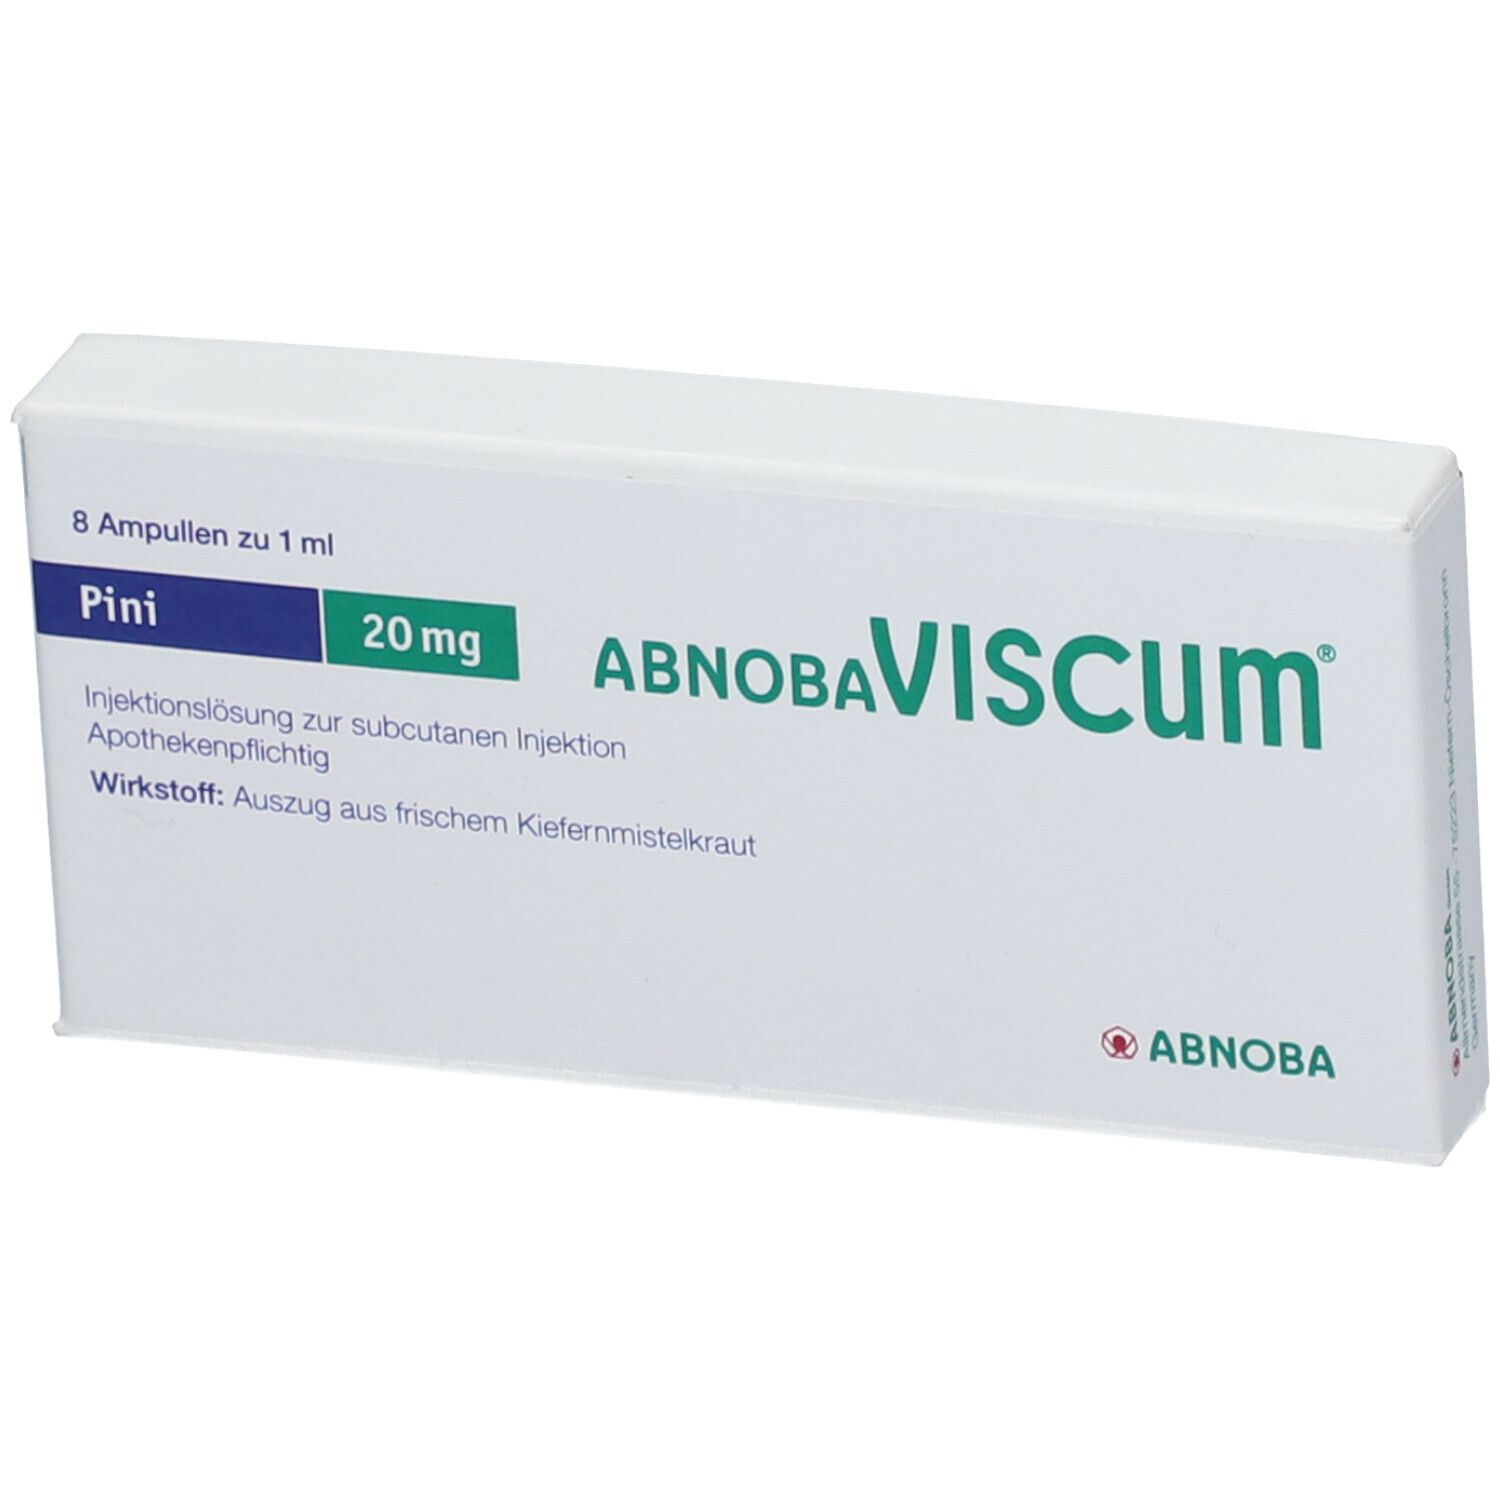 abnobaVISCUM® Pini 20 mg Ampullen